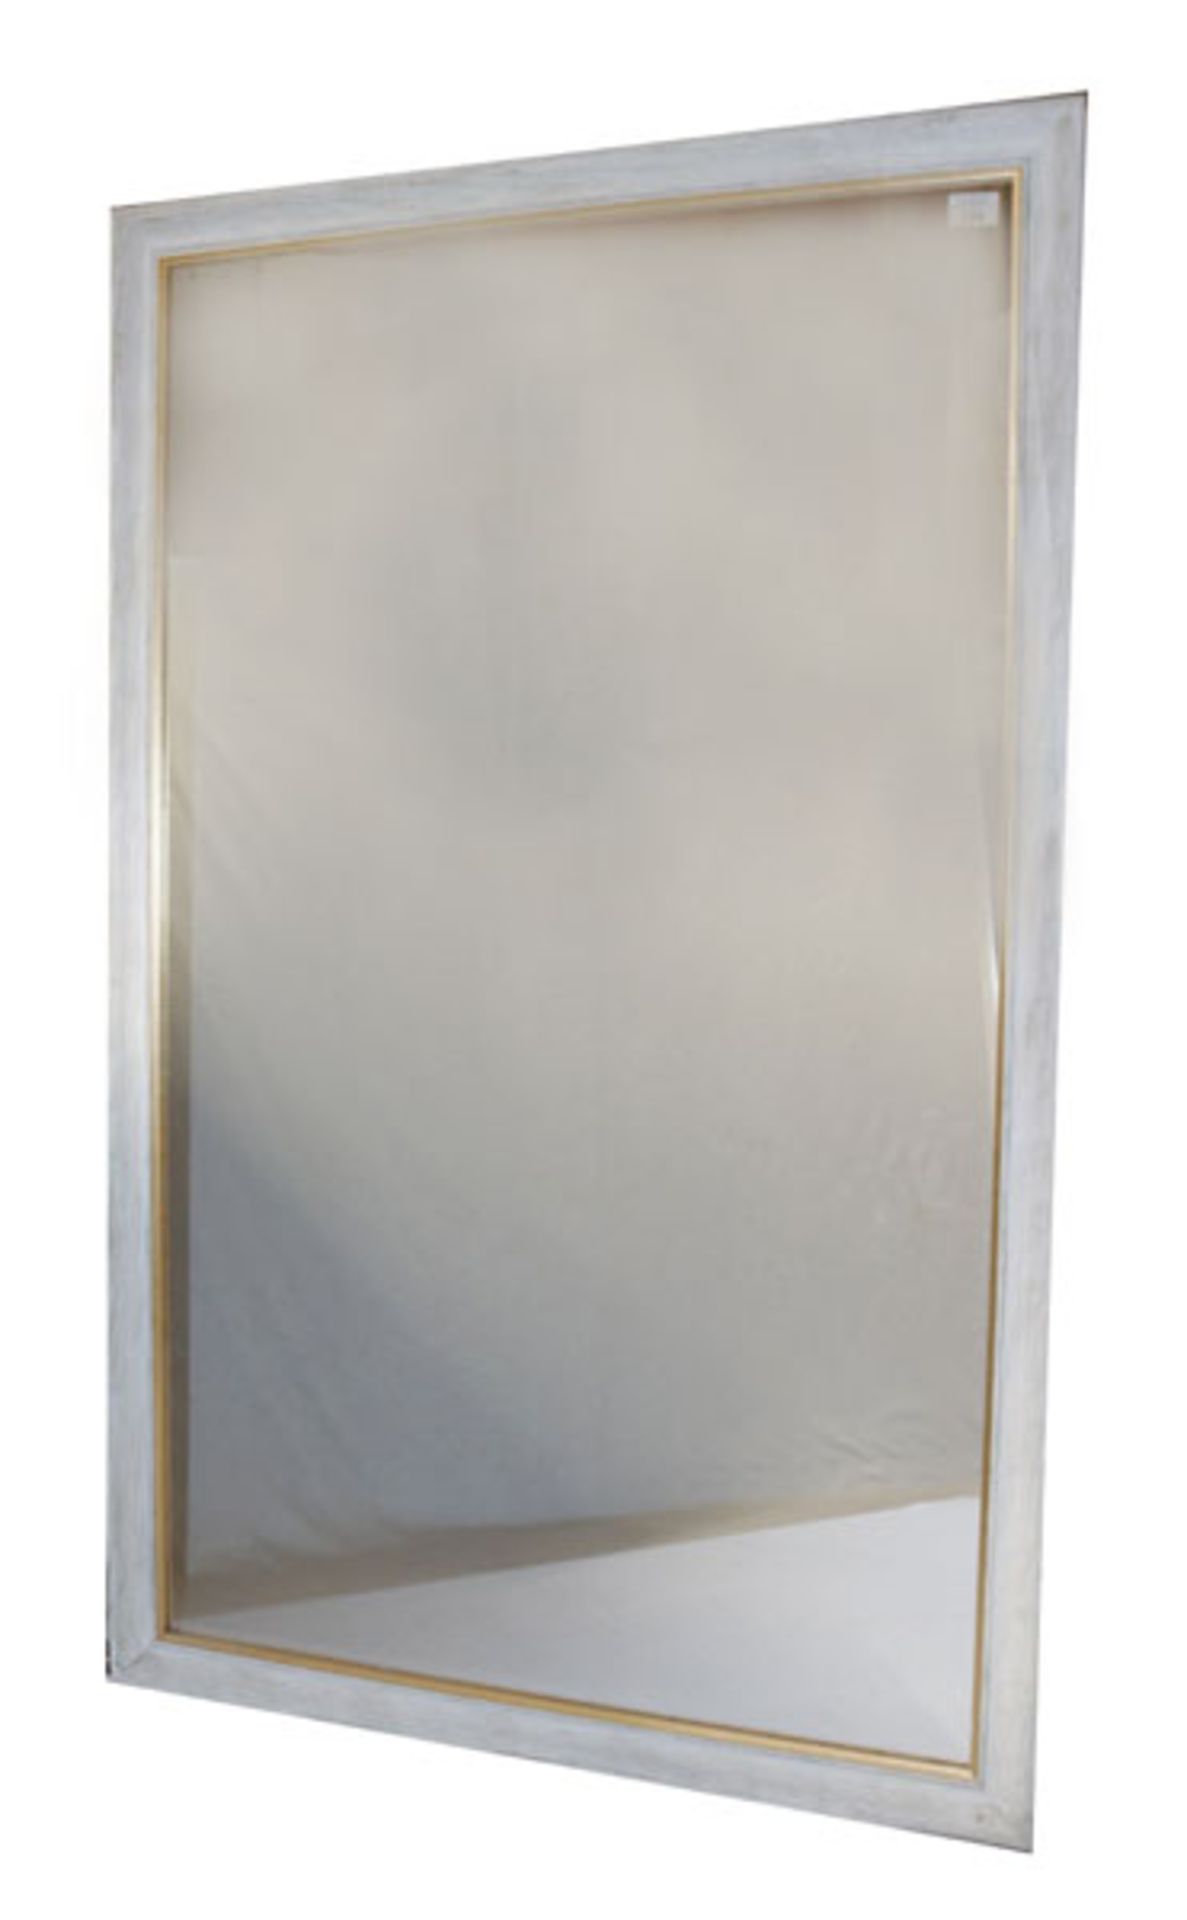 Wandspiegel in weißem Holzrahmen, Rahmen leicht berieben, incl. Rahmen 136,5 cm x 85 cm, Versand per